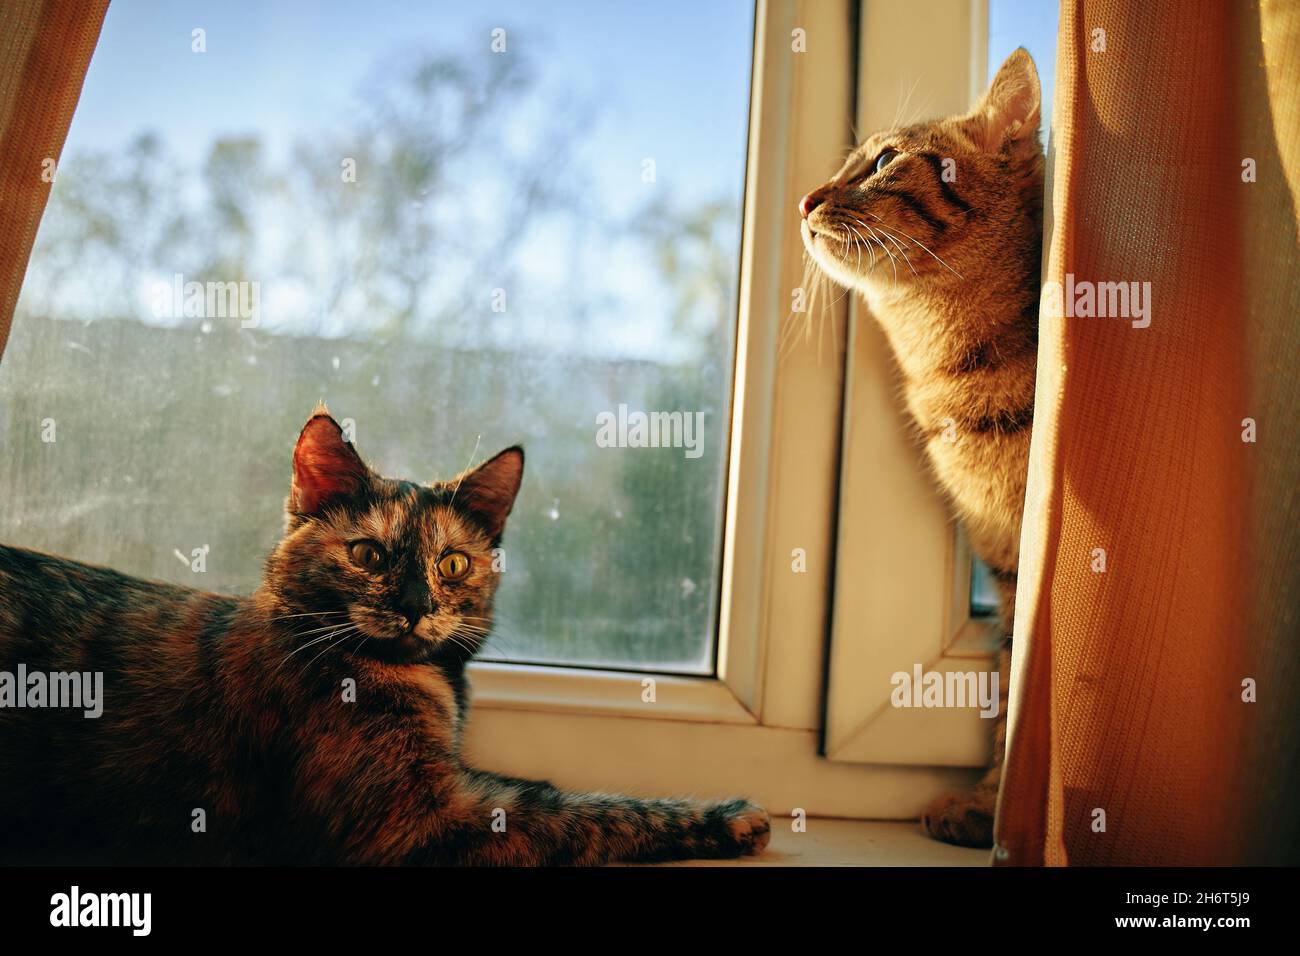 Die gestreifte, neugierige Katze blickt vom Vorhang aus und aus dem Fenster auf die Straße. Zwei niedliche flauschige Katzen auf der Fensterbank. Faules Haustier liegt unter den Strahlen der Sonne. Stockfoto